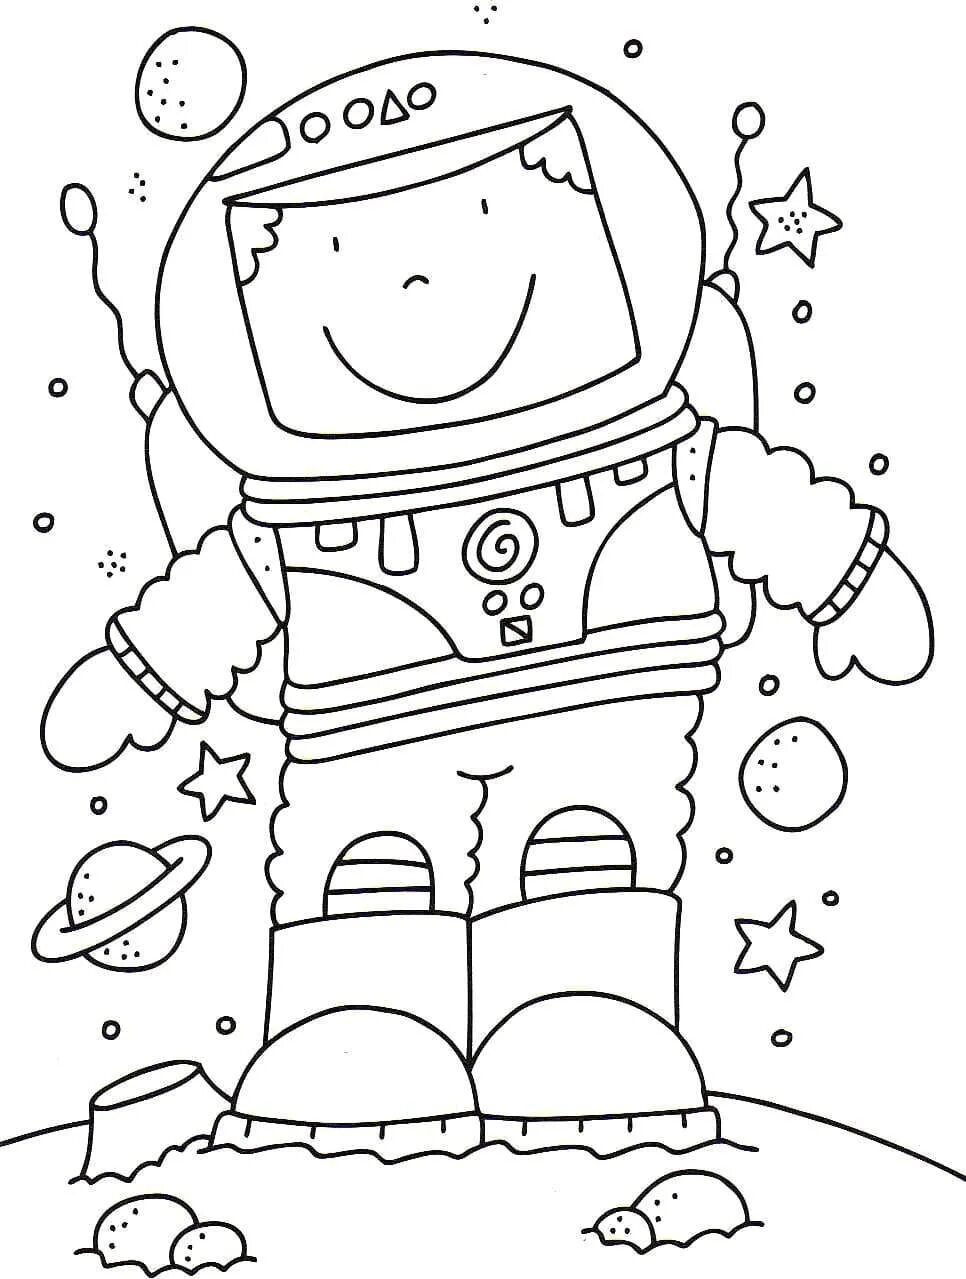 Раскраска космос для детей 3 лет. Космос раскраска для детей. Раскраска. В космосе. Космические раскраски для детей. Детские раскраски космос.